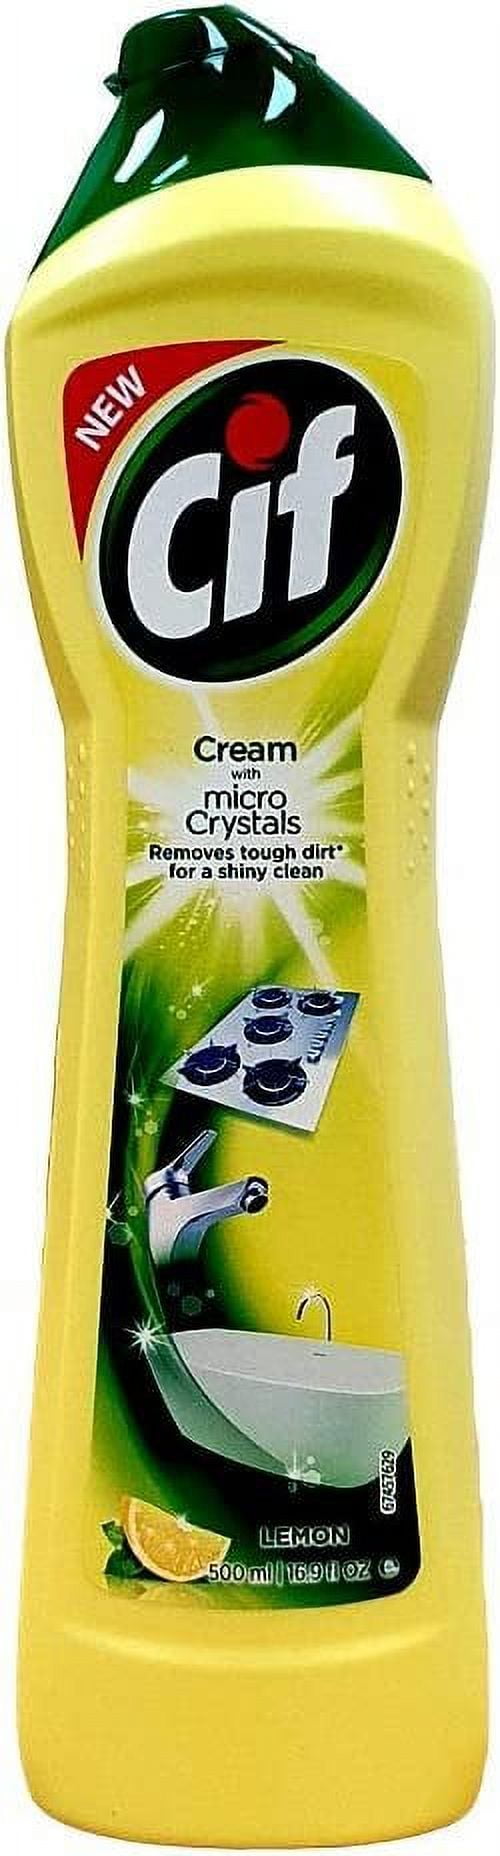 Cif Cream Cleaner Lemon (750 ml) - CKA500